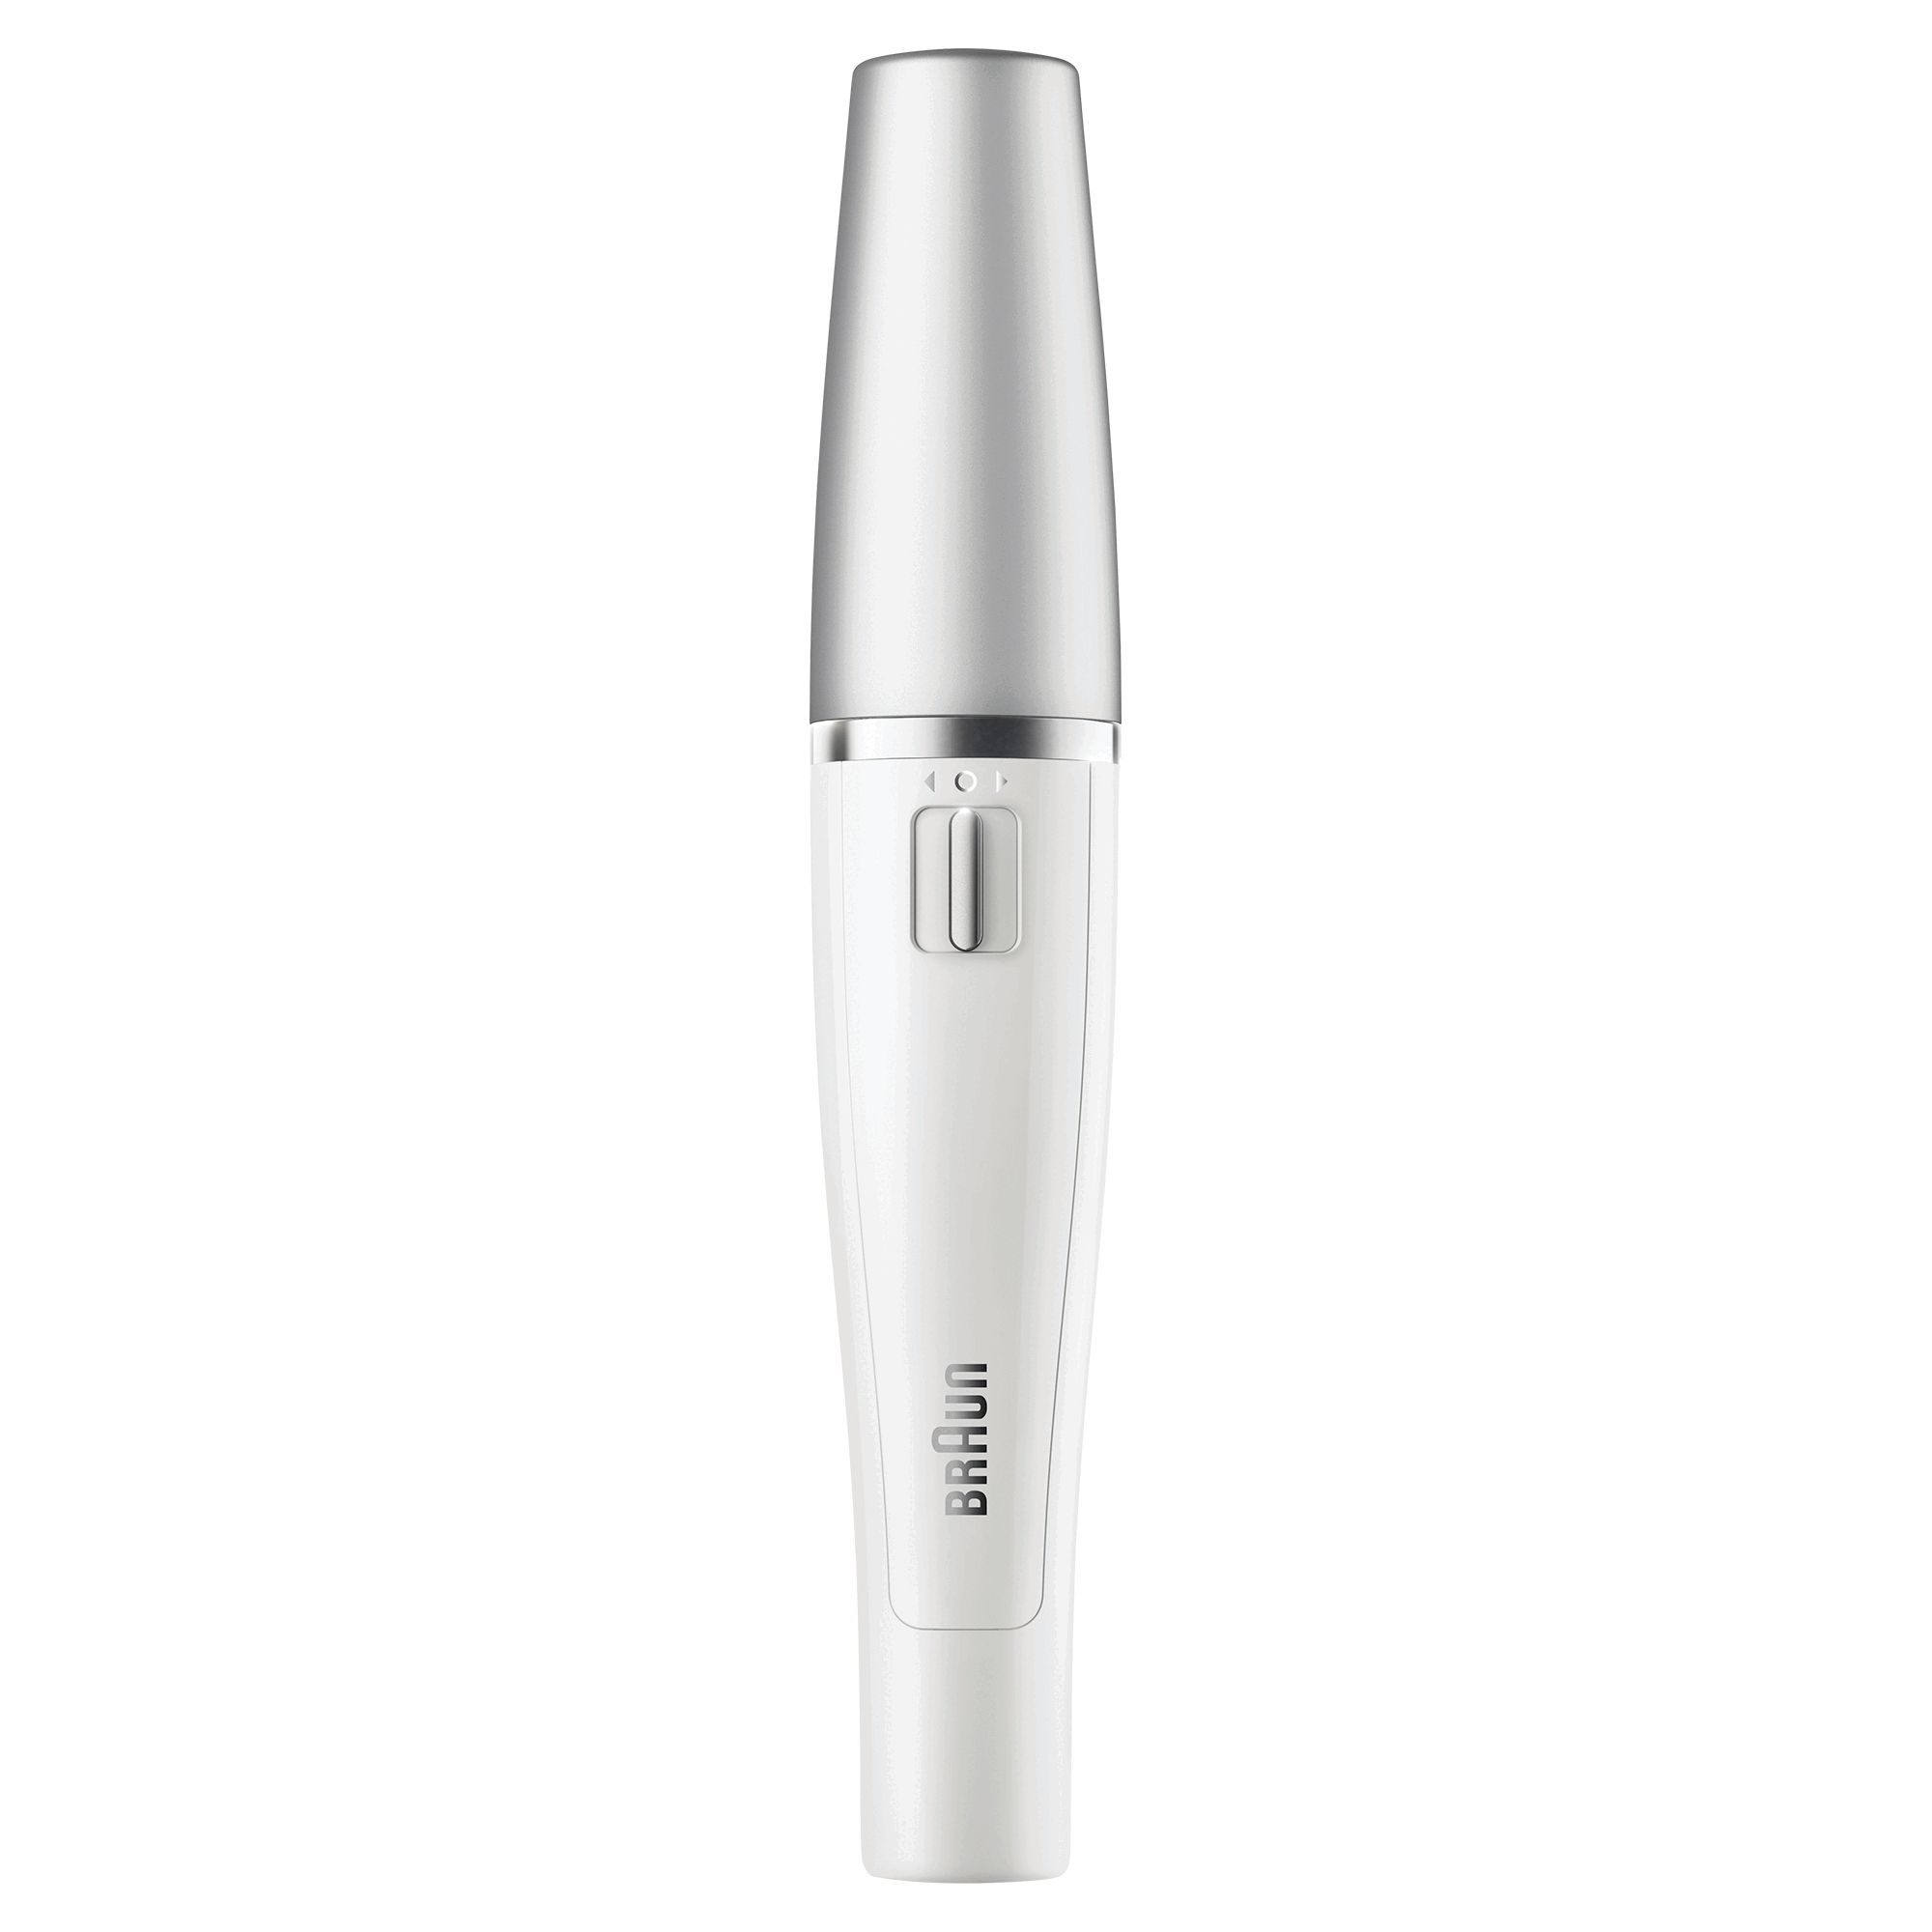 Braun Face 830 Premium-editie gezichtsepilator &amp; gezichtsreinigingsborstel incl. spiegel &amp; toilettasje